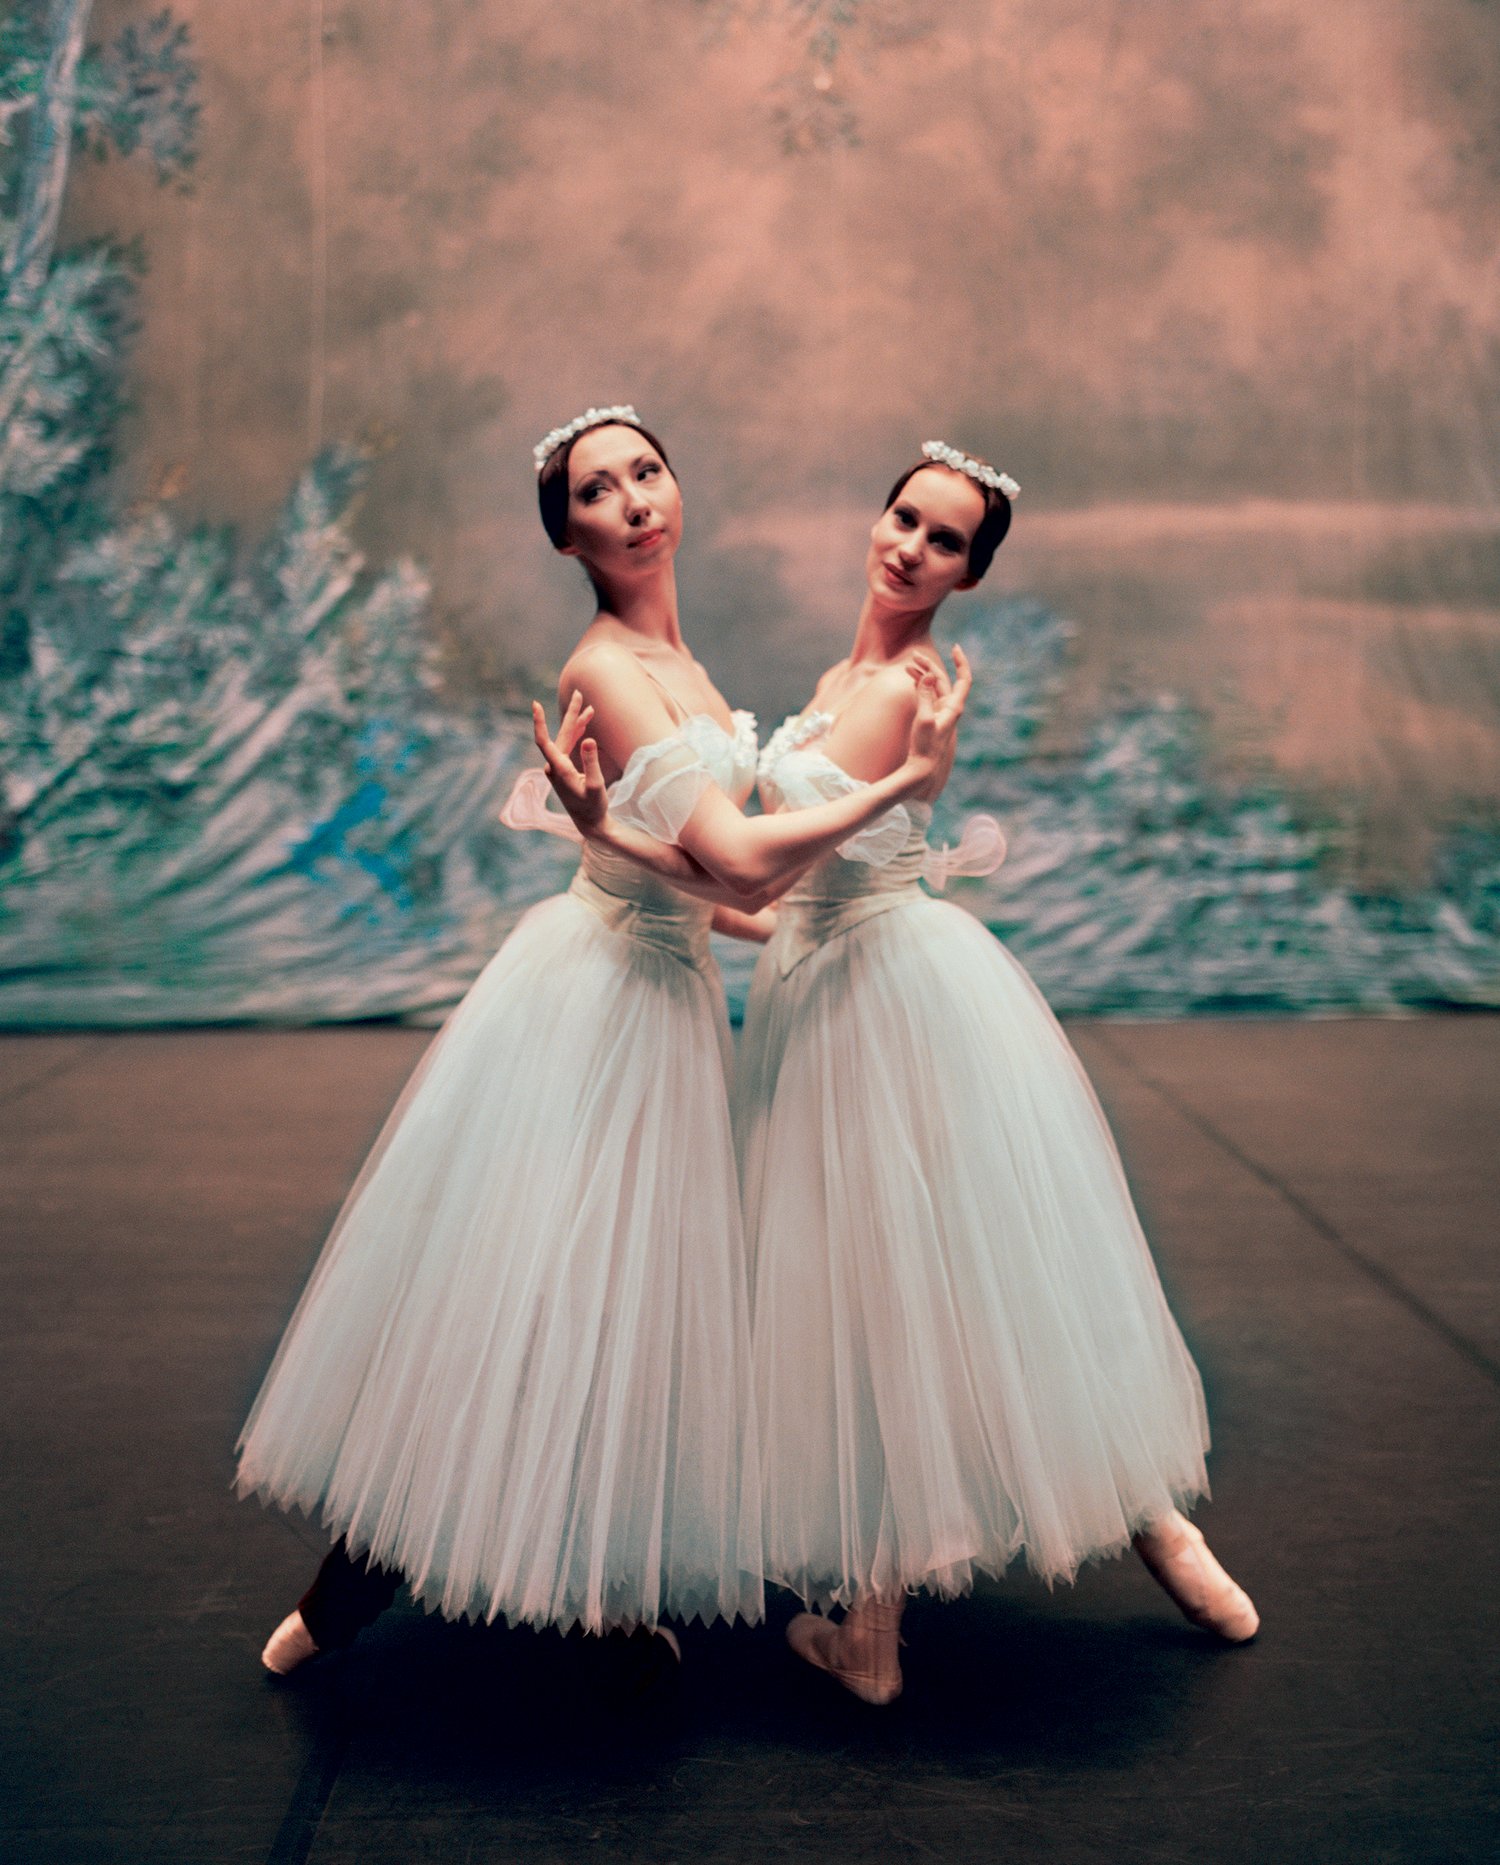 Image of Ballerinas, Bolshoi No. 1. Moscow, Russia. 2001